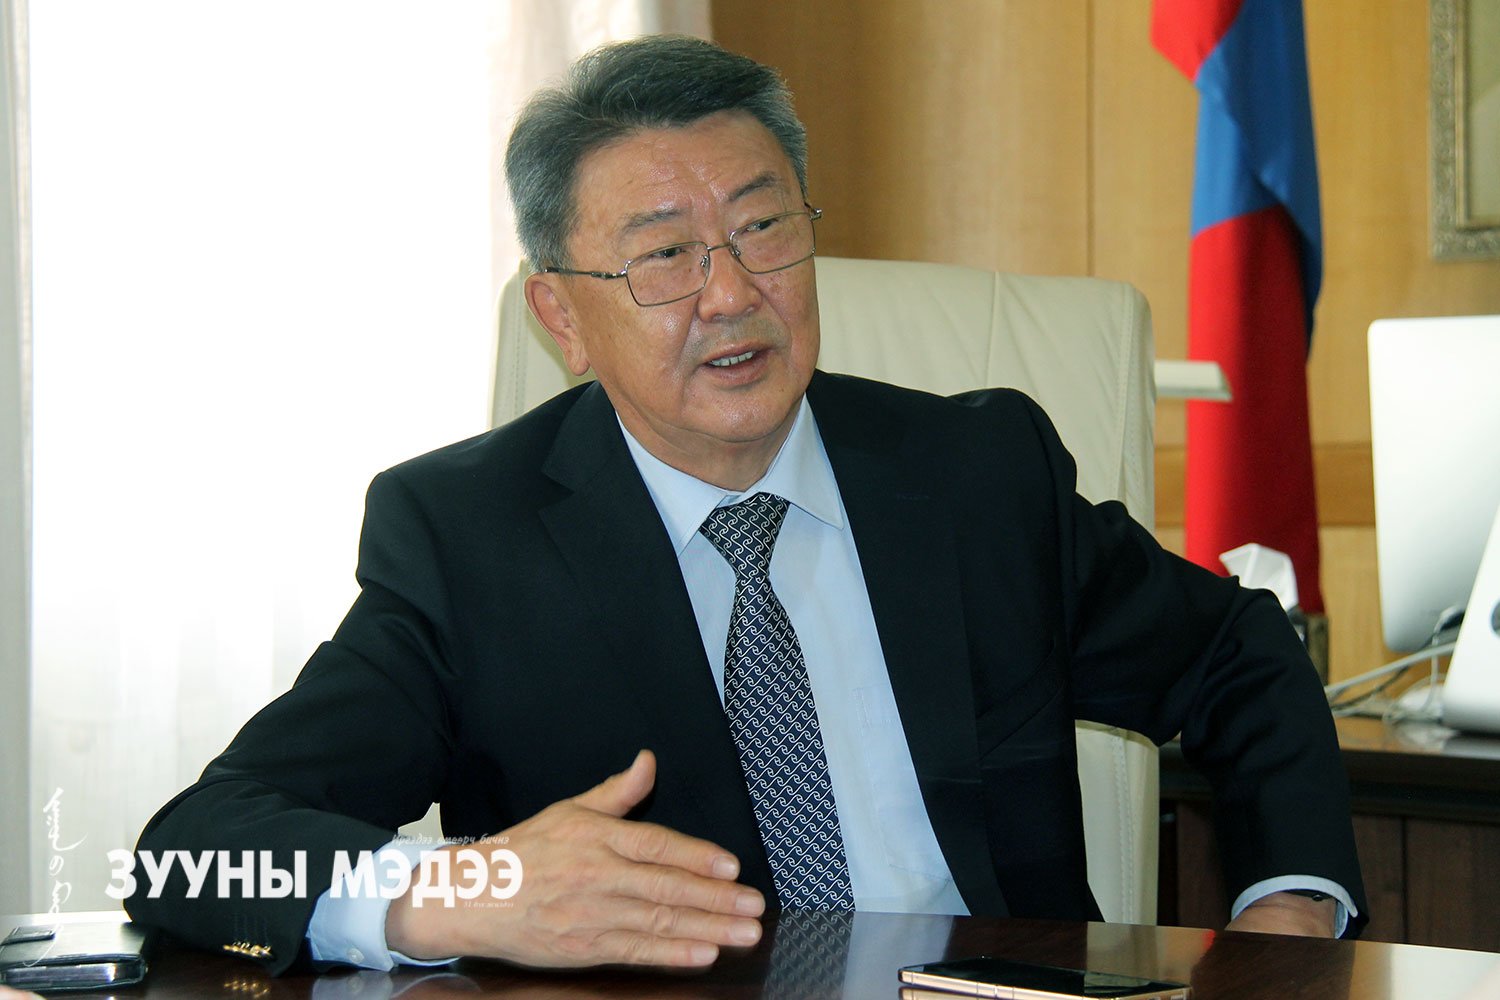 Н.Энхболд: Монгол төрийн бодлогын залгамж чанарыг Үндсэн хуулиар хамгаалсан